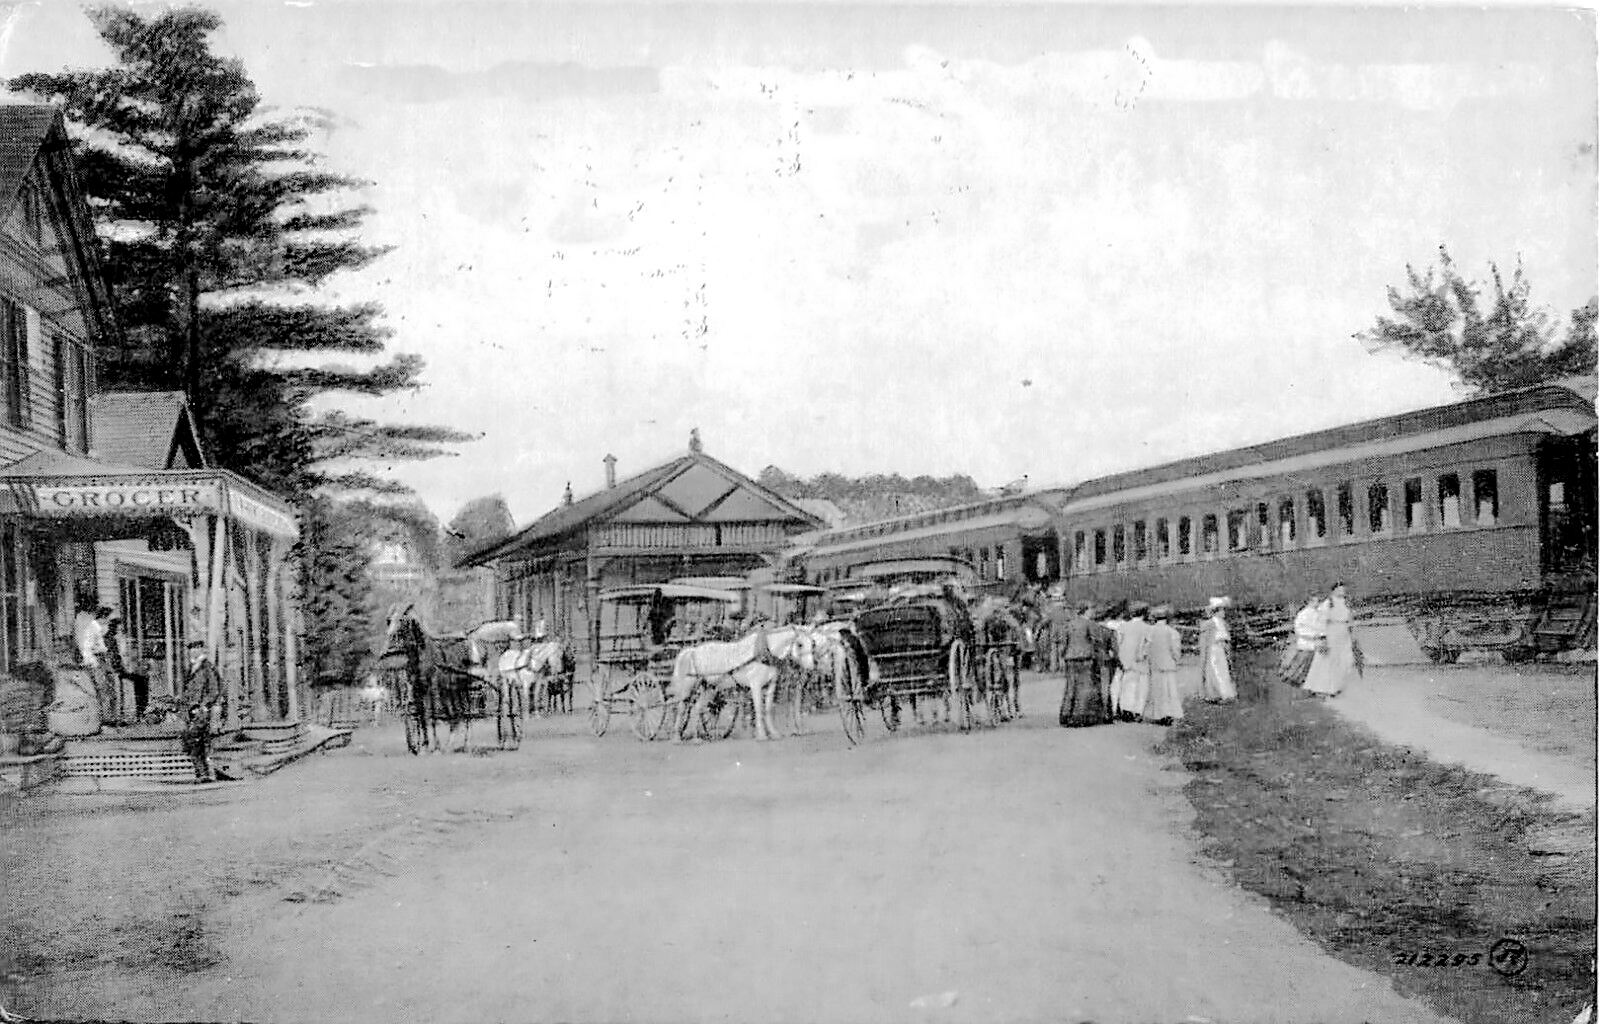 Train Station, Haines Falls NY c1910, Green County